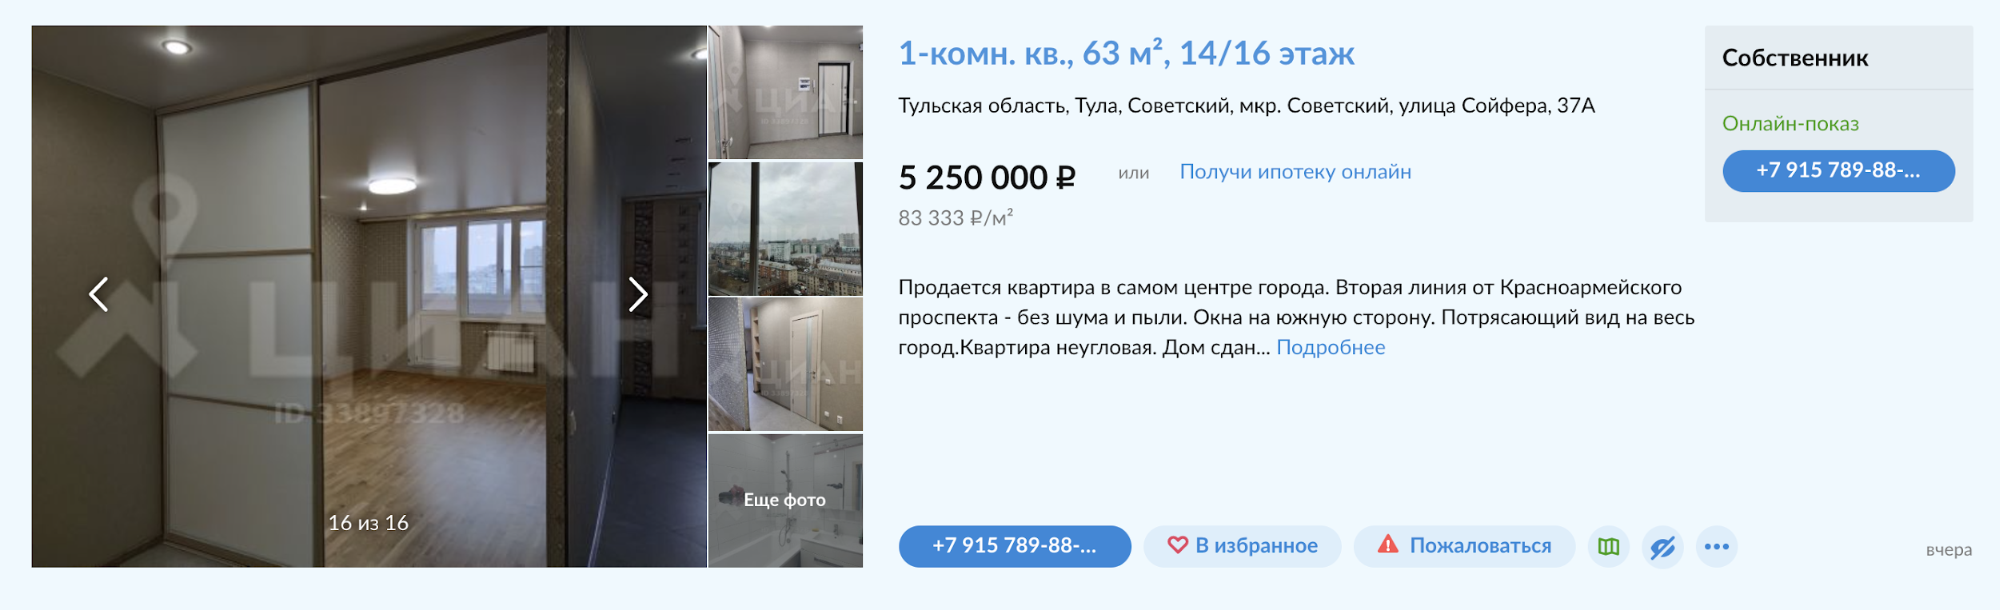 Однушка близко к центру в относительно новом доме на высоком этаже — 5 млн рублей